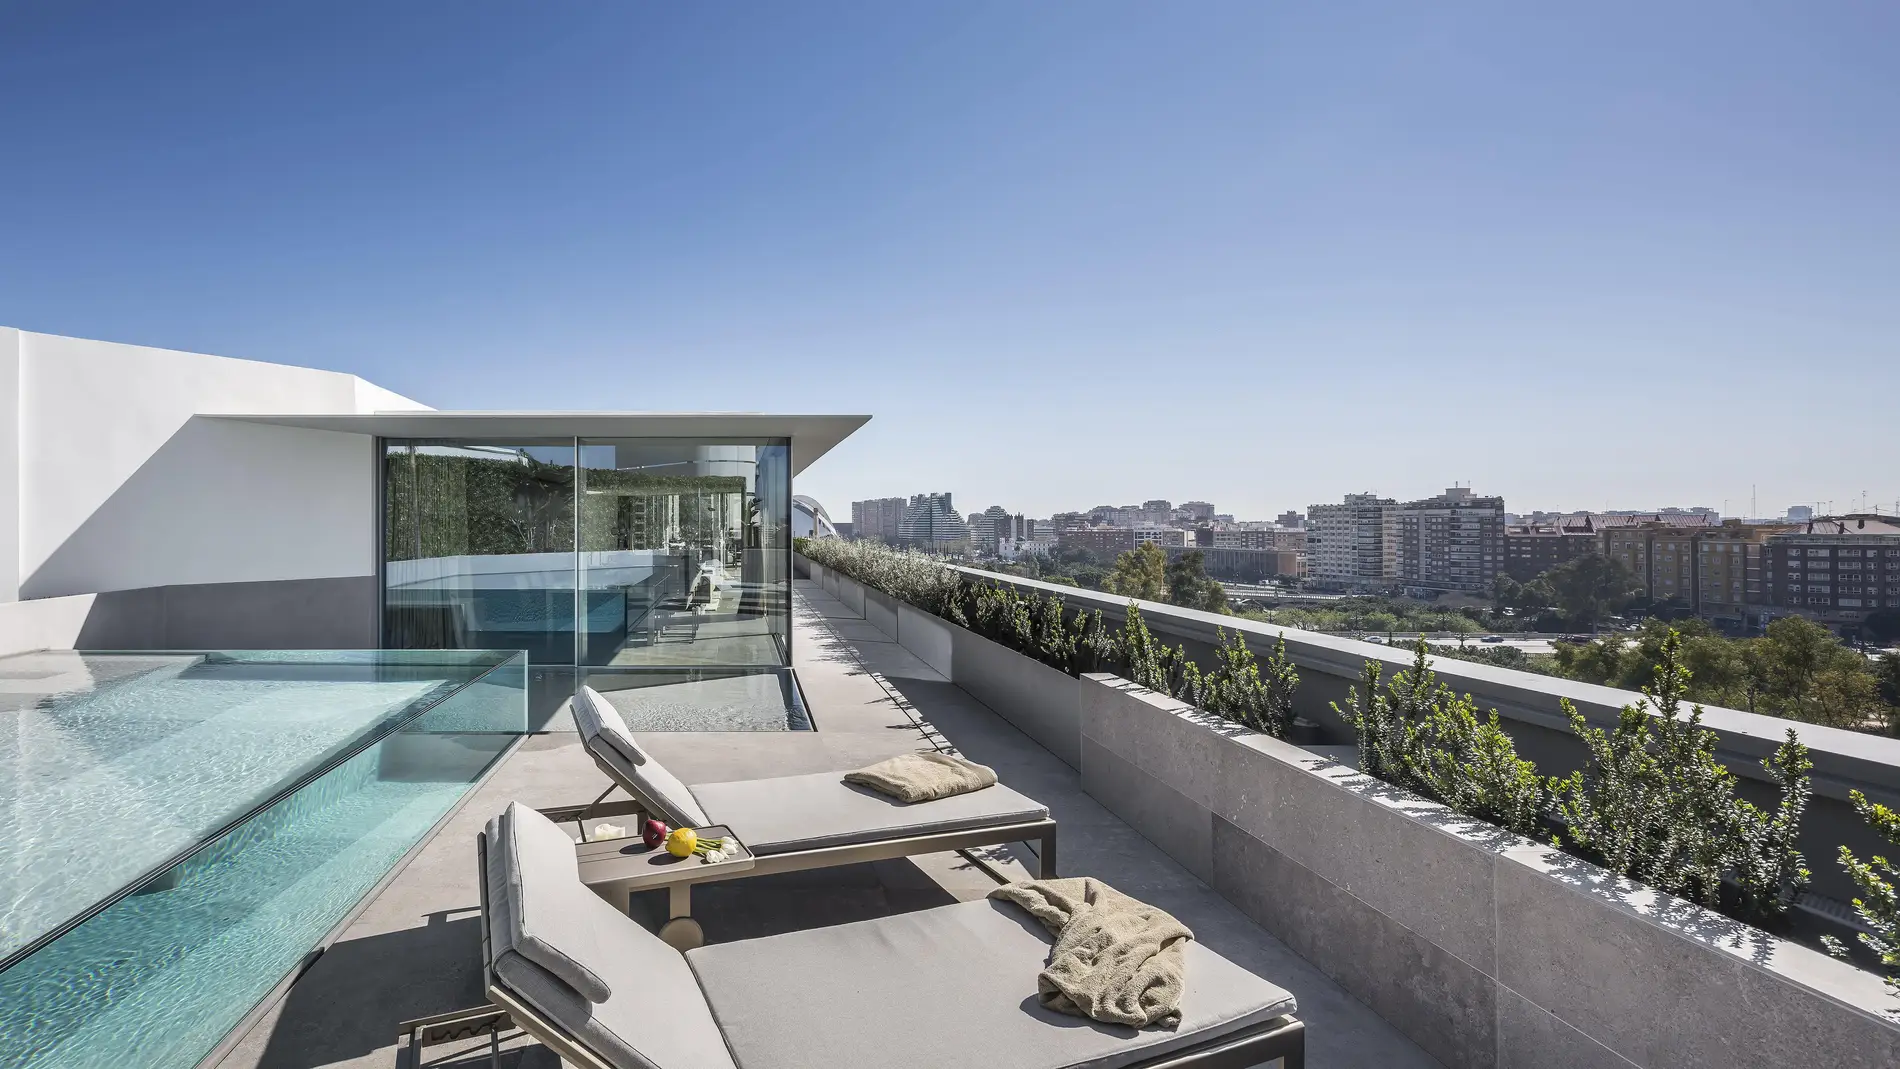 El verdadero coste de tener terraza: los pisos con espacio exterior son un  36% más caros — idealista/news